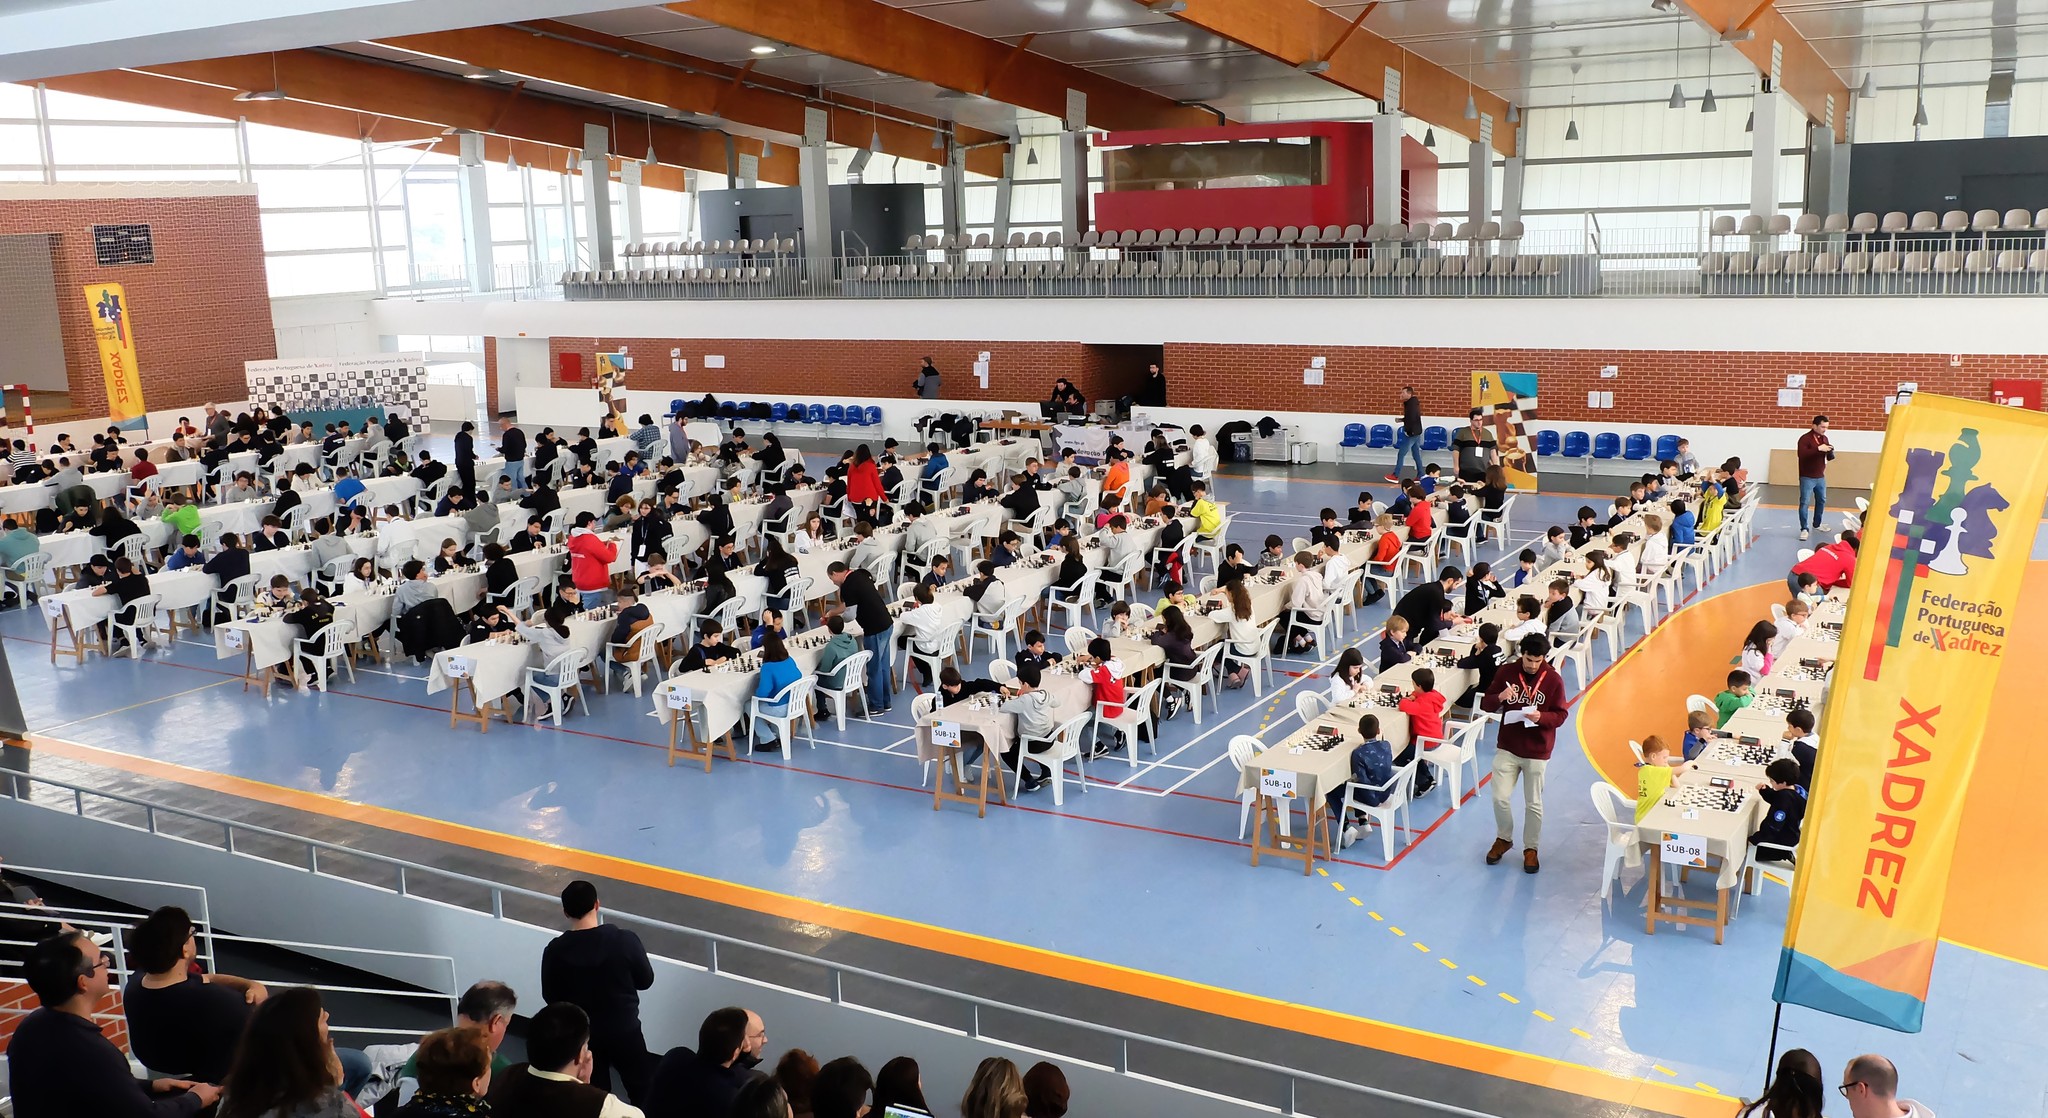 Associação de Xadrez do Porto organiza campeonato distrital em Paredes